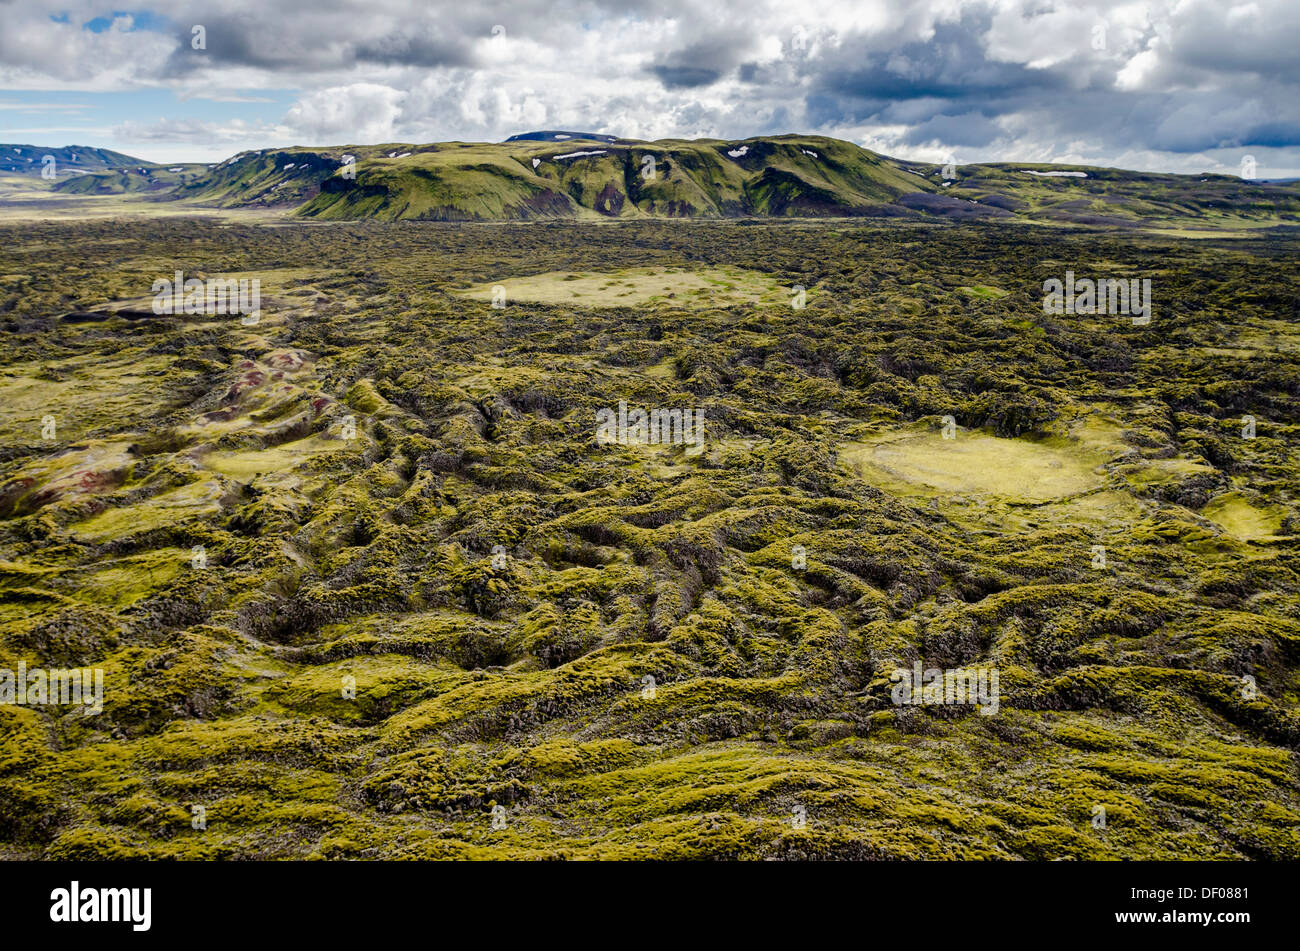 Vue aérienne, champ de lave couvert de mousse, des cratères du Laki ou islandais Lakagígar, Highlands, dans le sud de l'Islande, Islande, Suðurland Banque D'Images